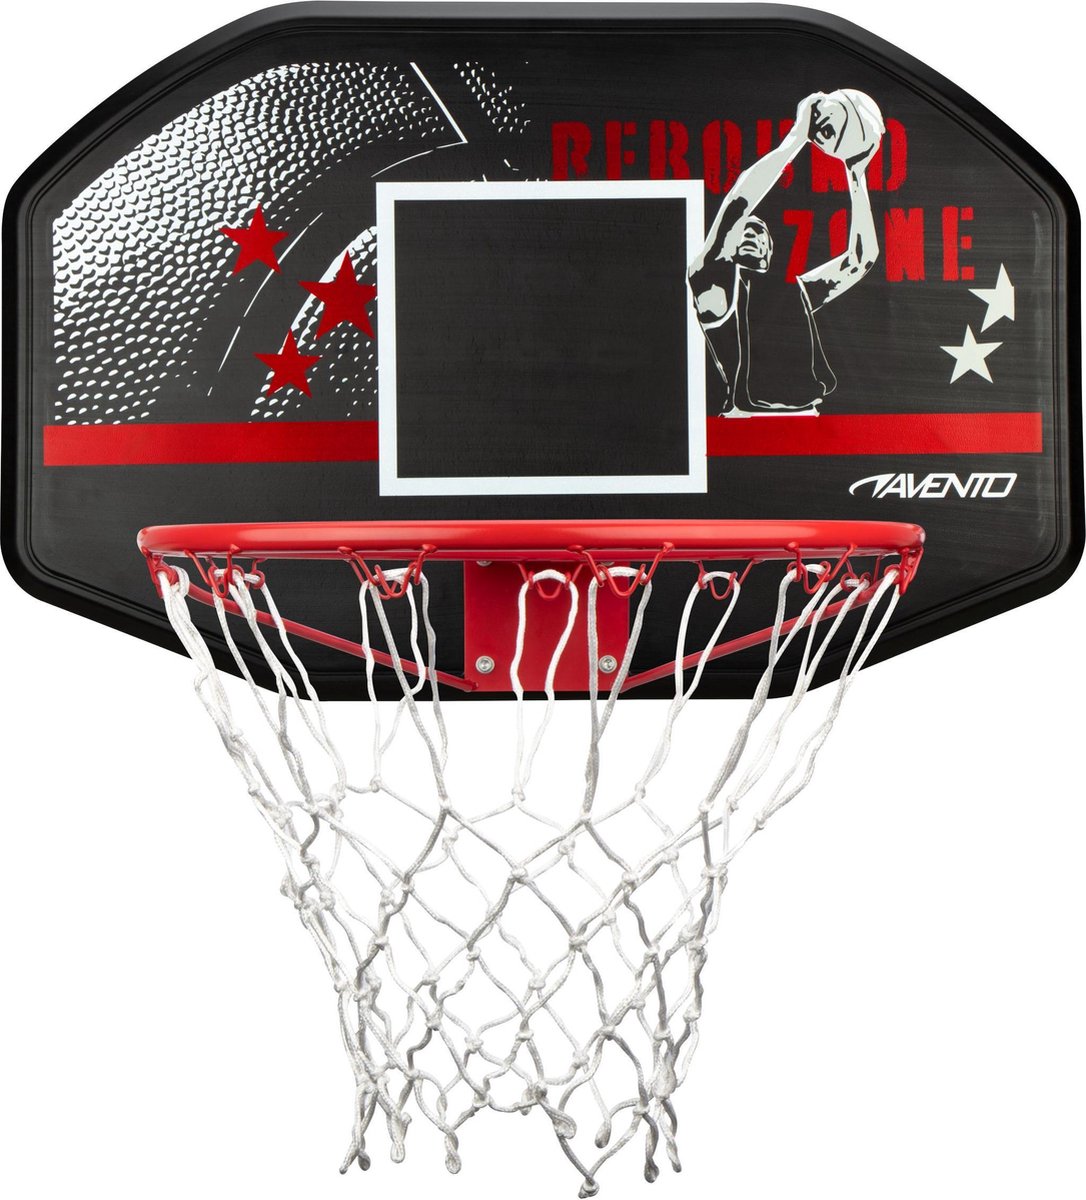 Avento basketbalbord + ring + net  - Rebound Zone - Avento